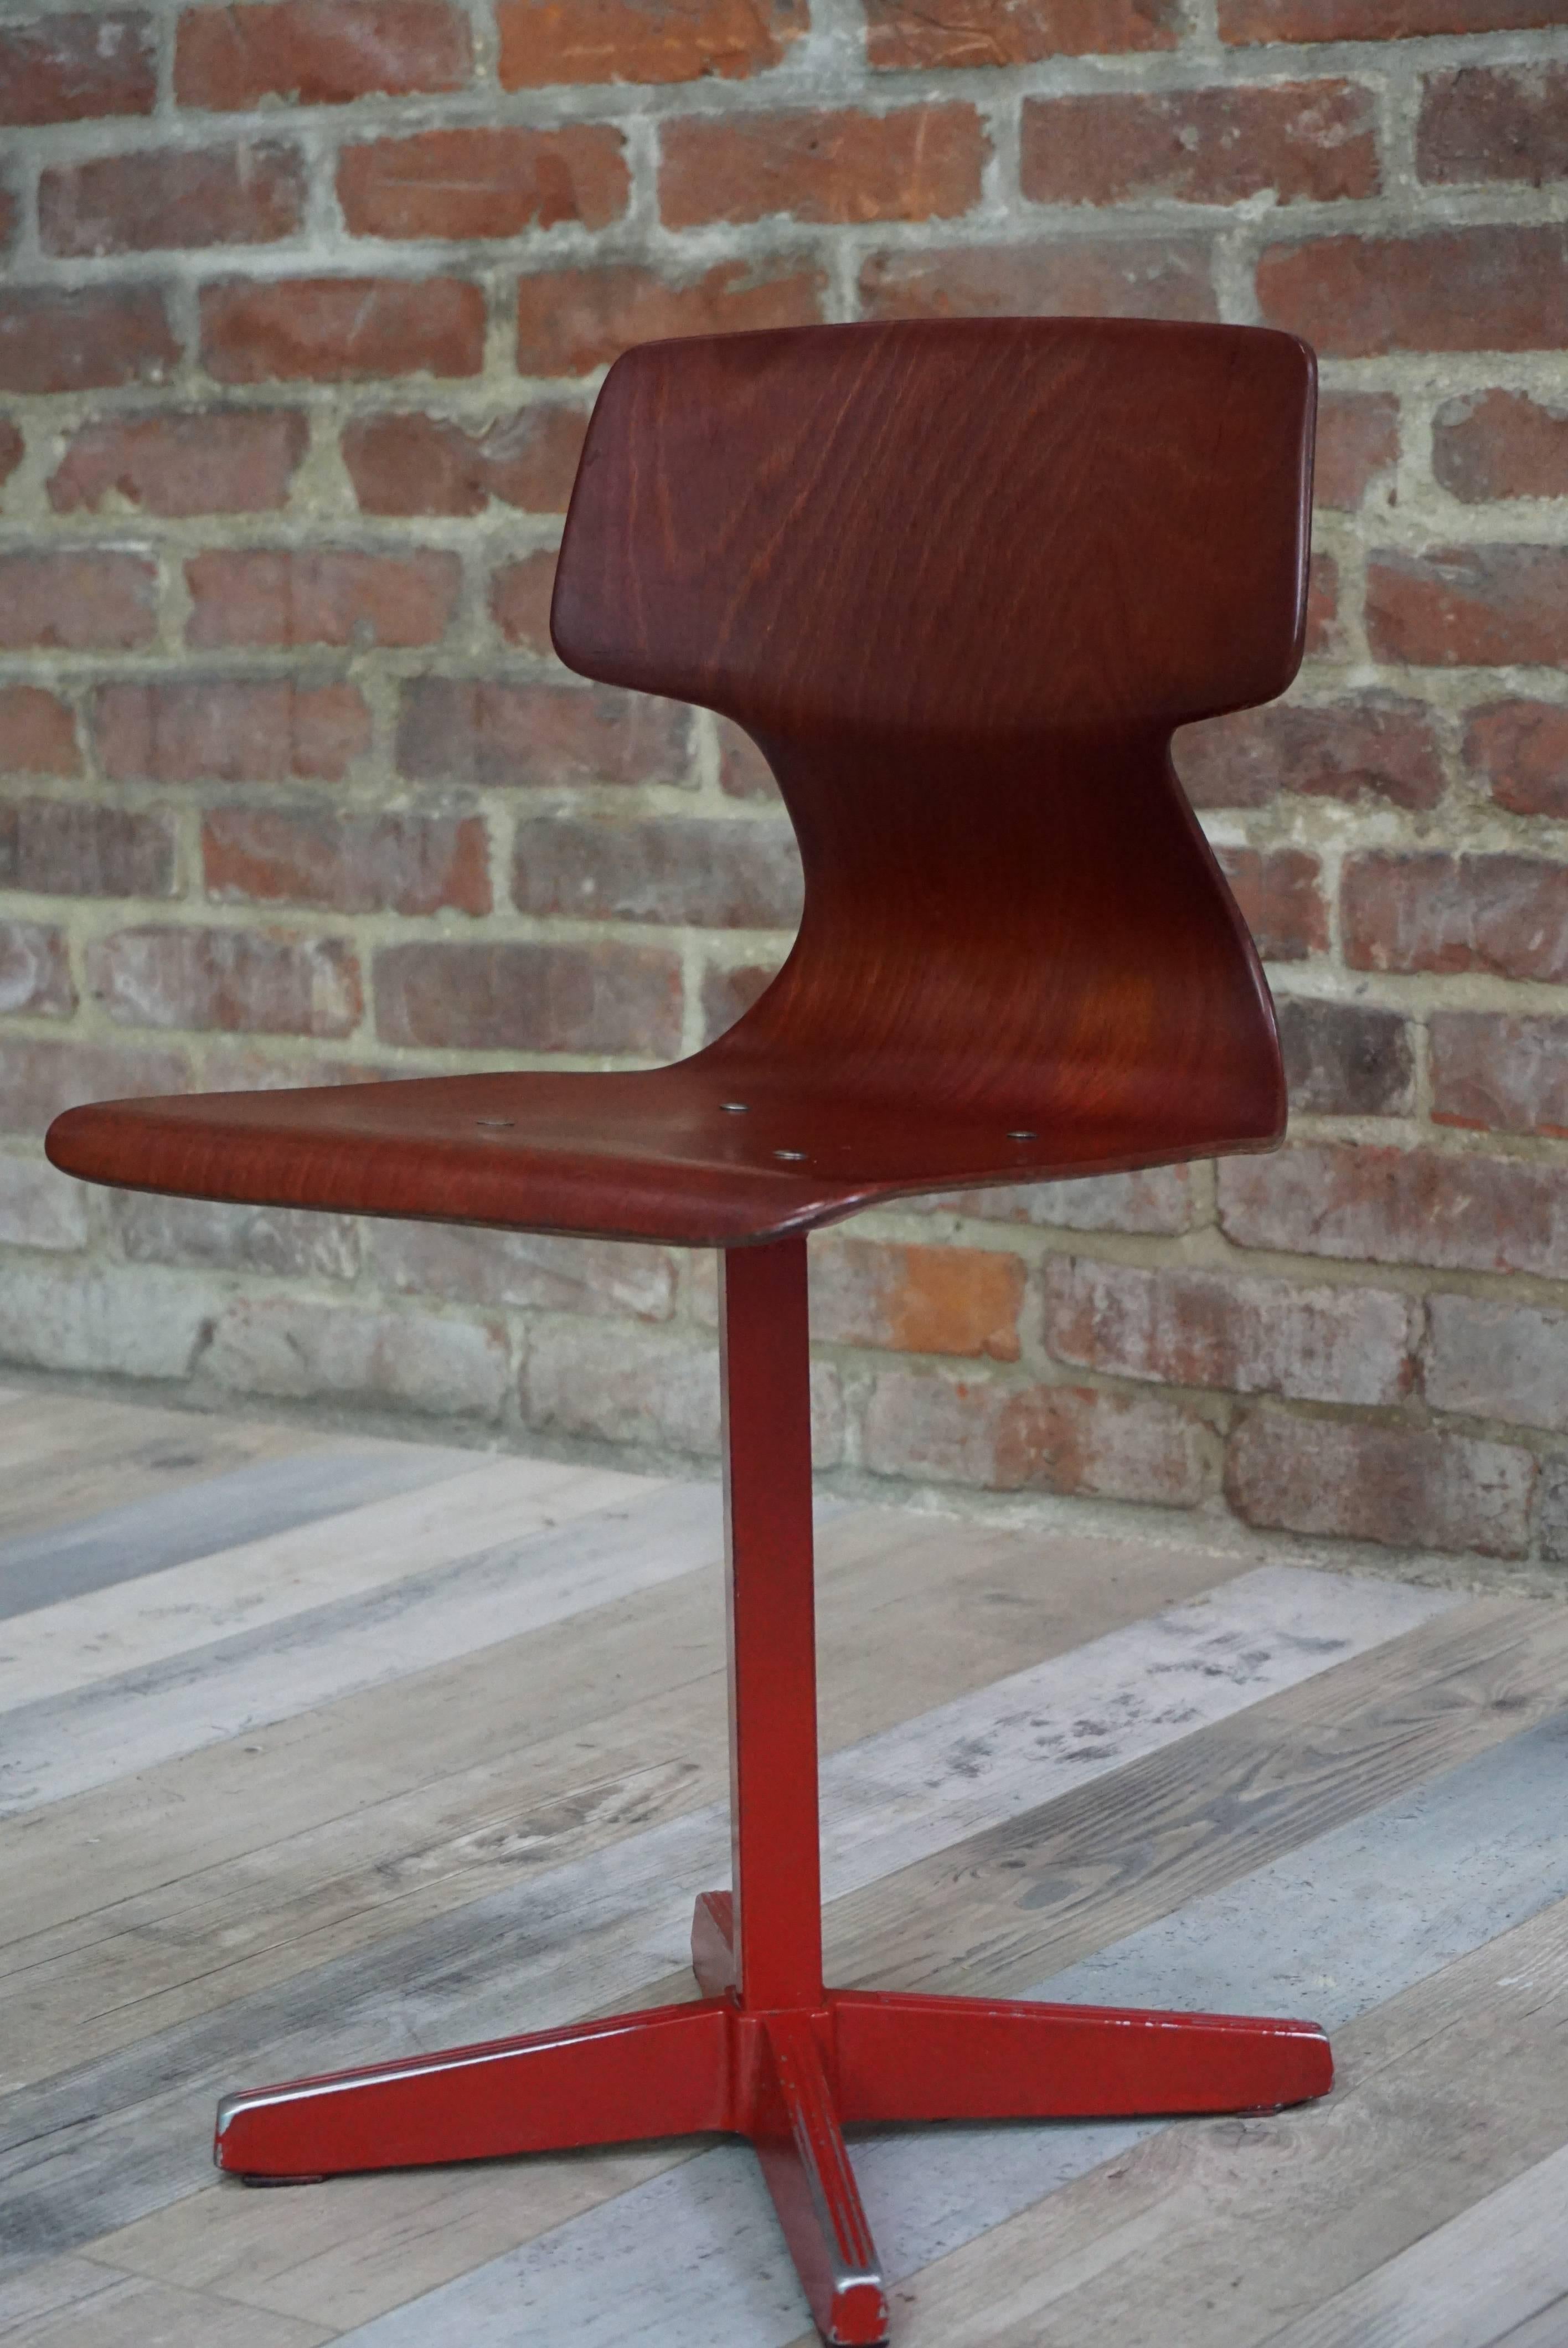 Belle chaise estampillée et numérotée, produite à la fin des années 1950 et pendant les années 1960 pour des bâtiments publics (universités, ateliers, cantines). L'atelier Galvanitas était connu à l'époque pour sa qualité et sa durabilité : le métal